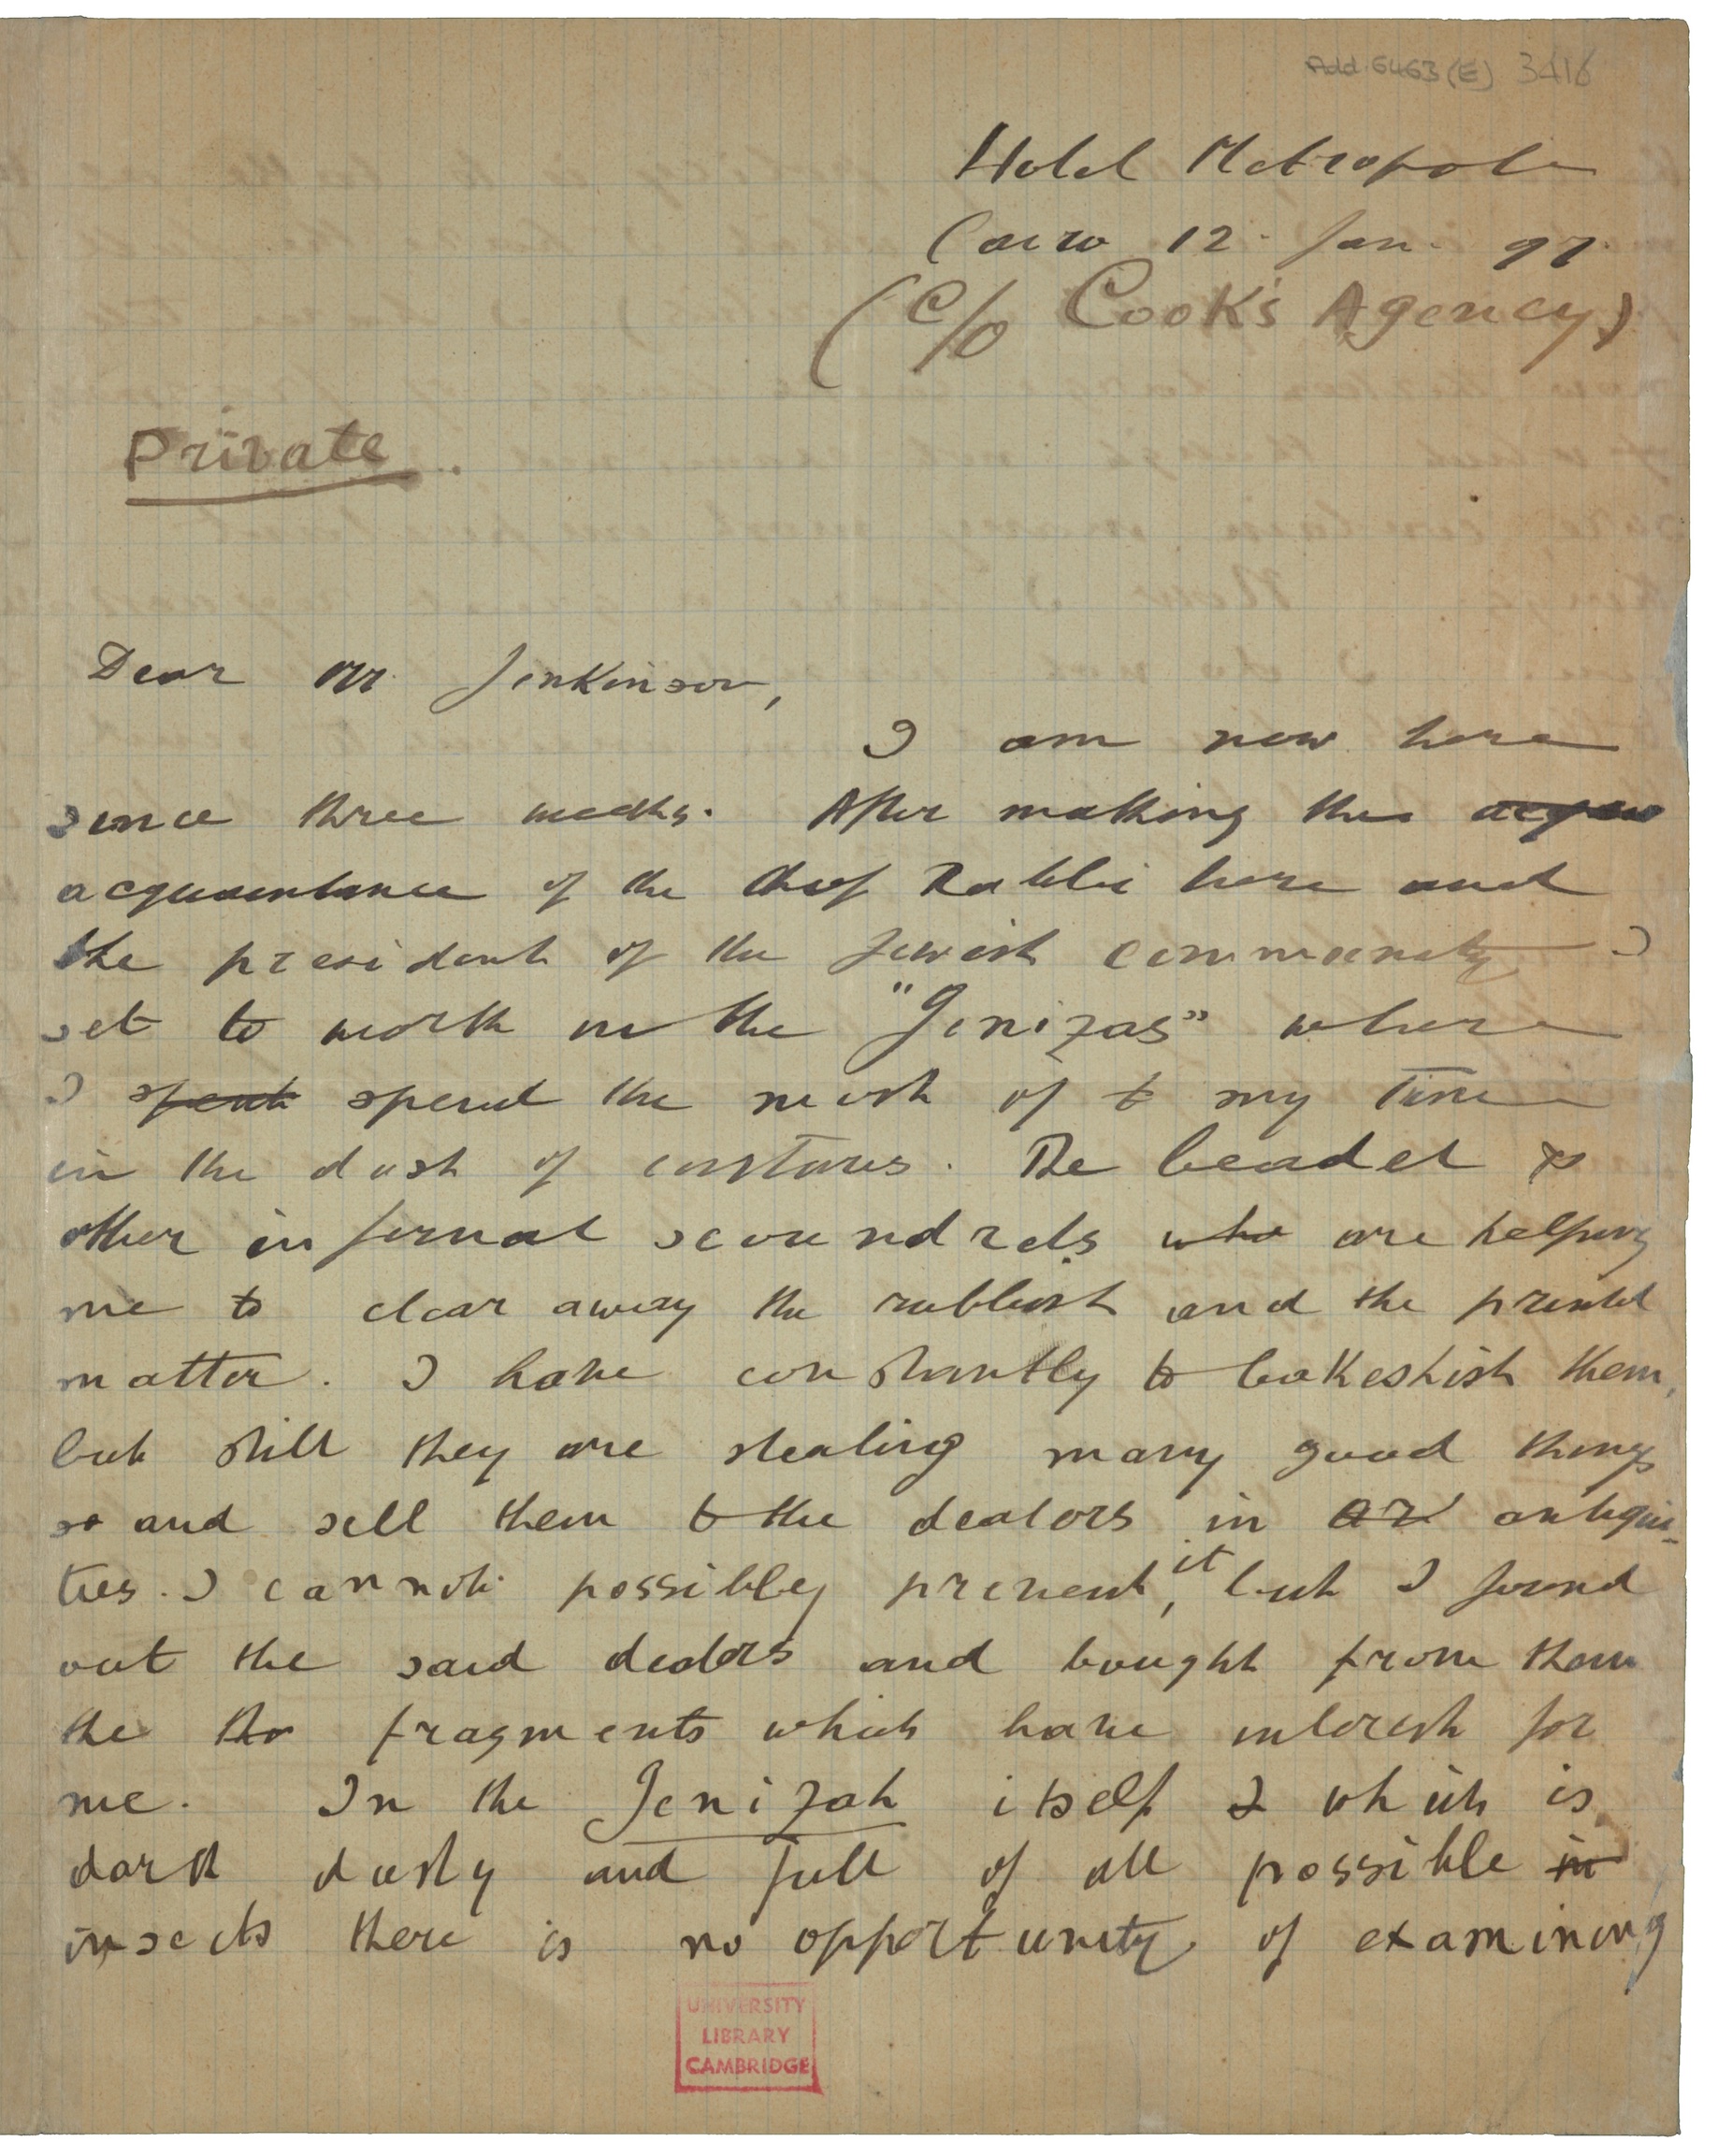 Schechter's letter